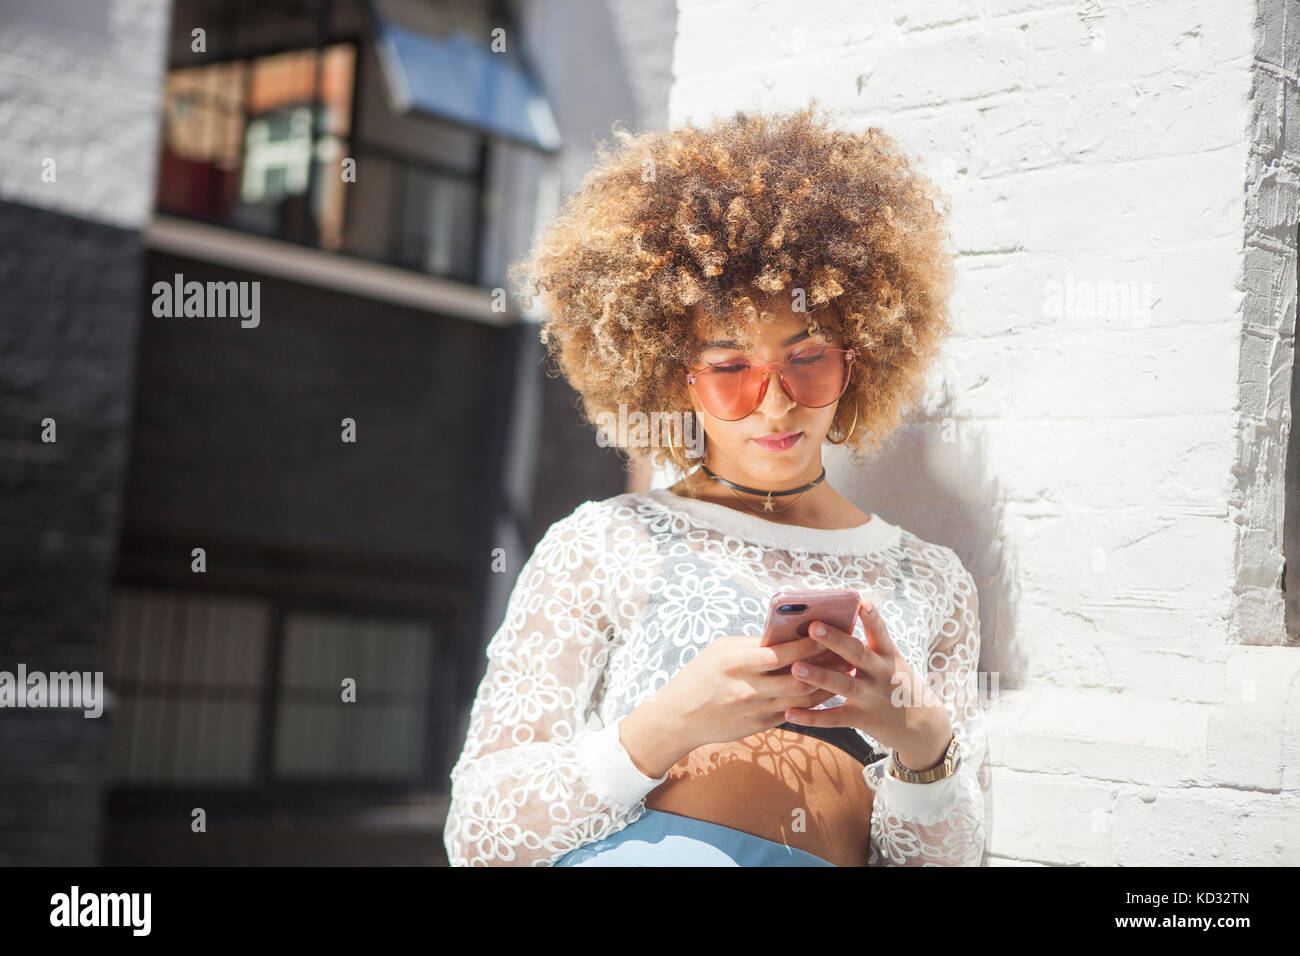 Jeune femme à l'extérieur, leaning against wall, looking at smartphone Banque D'Images